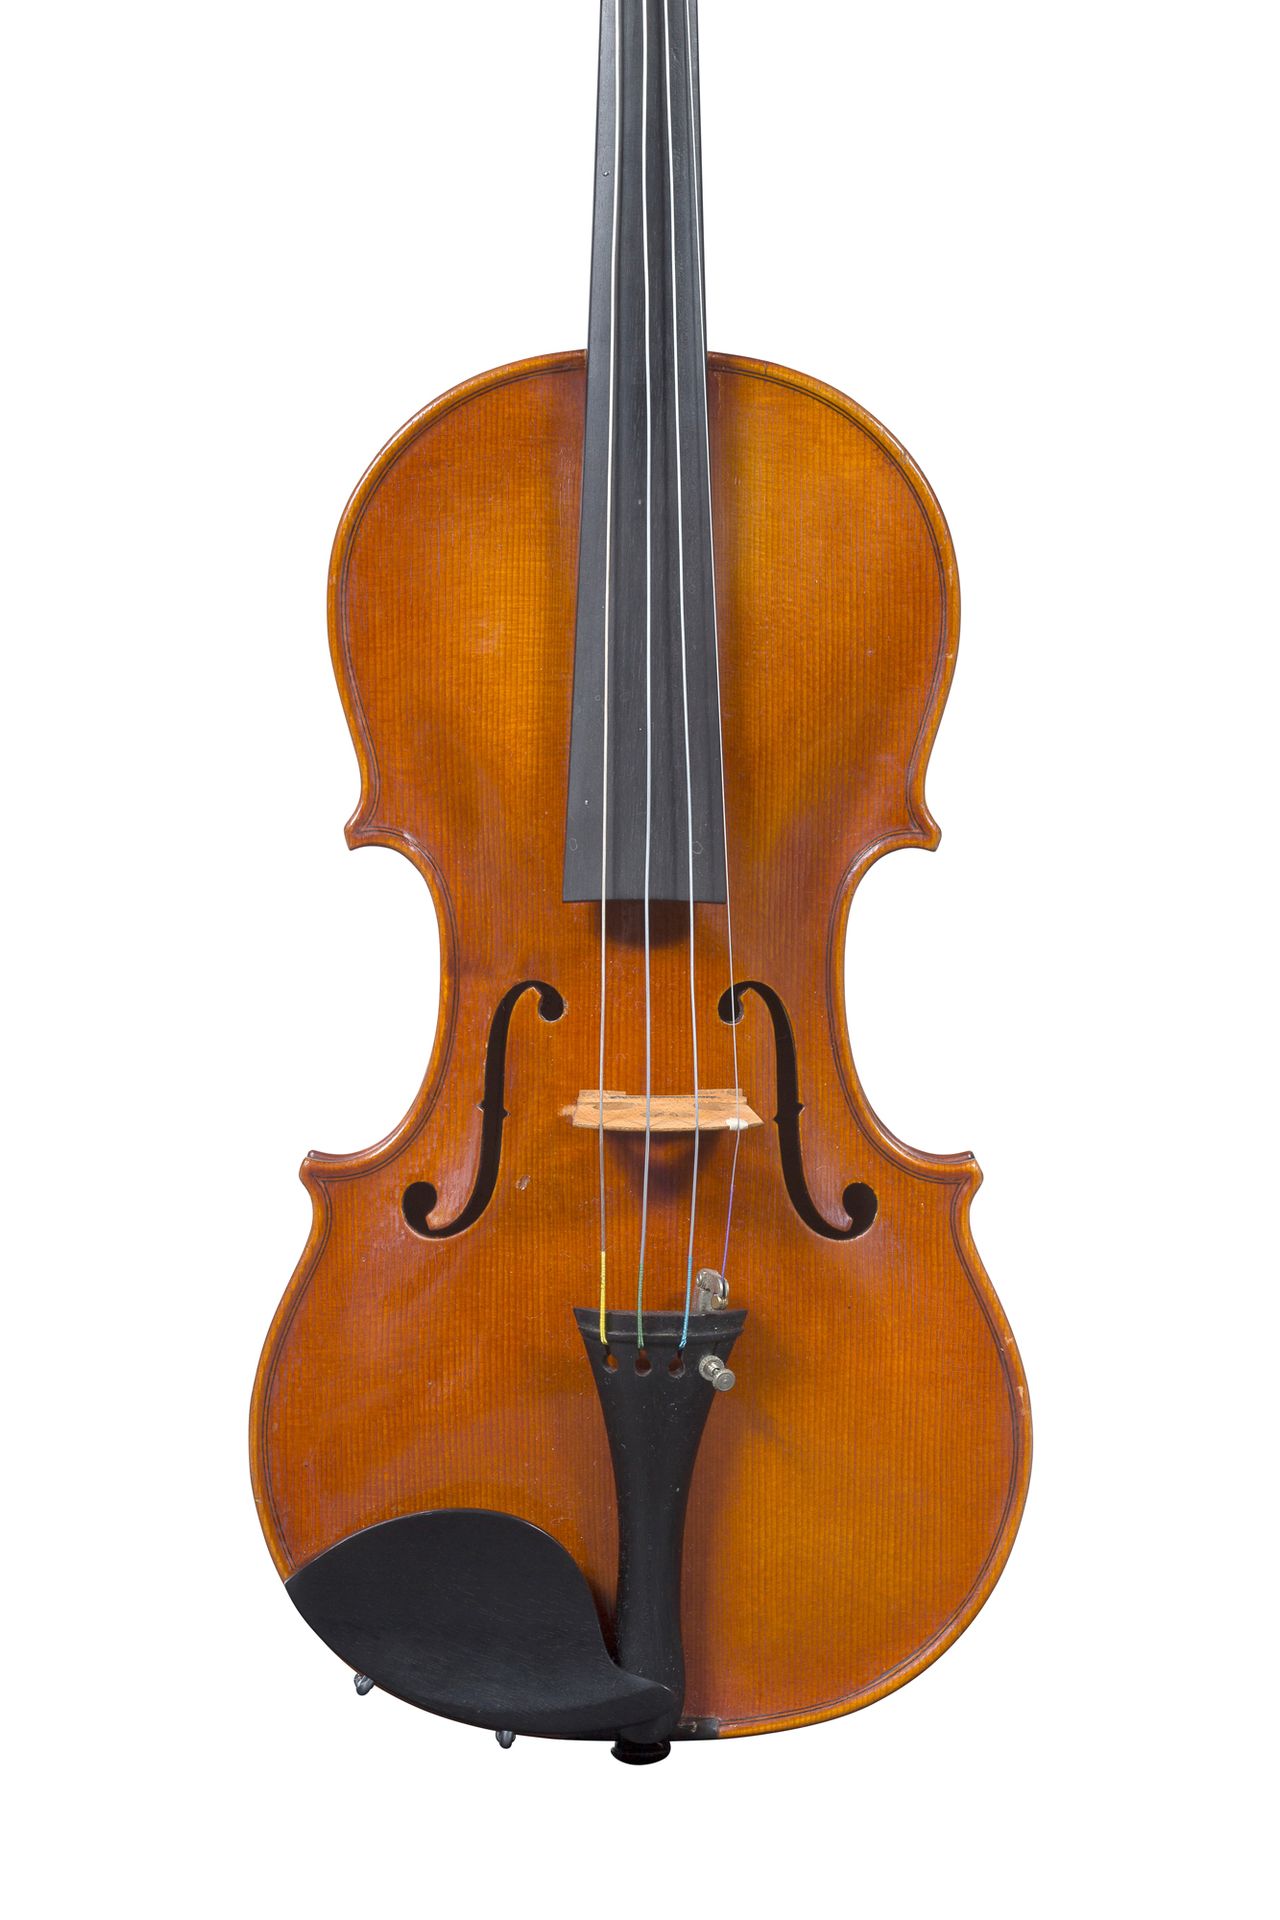 Null Französische Geige, hergestellt in Mirecourt um 1920-30.
Trägt das apokryph&hellip;